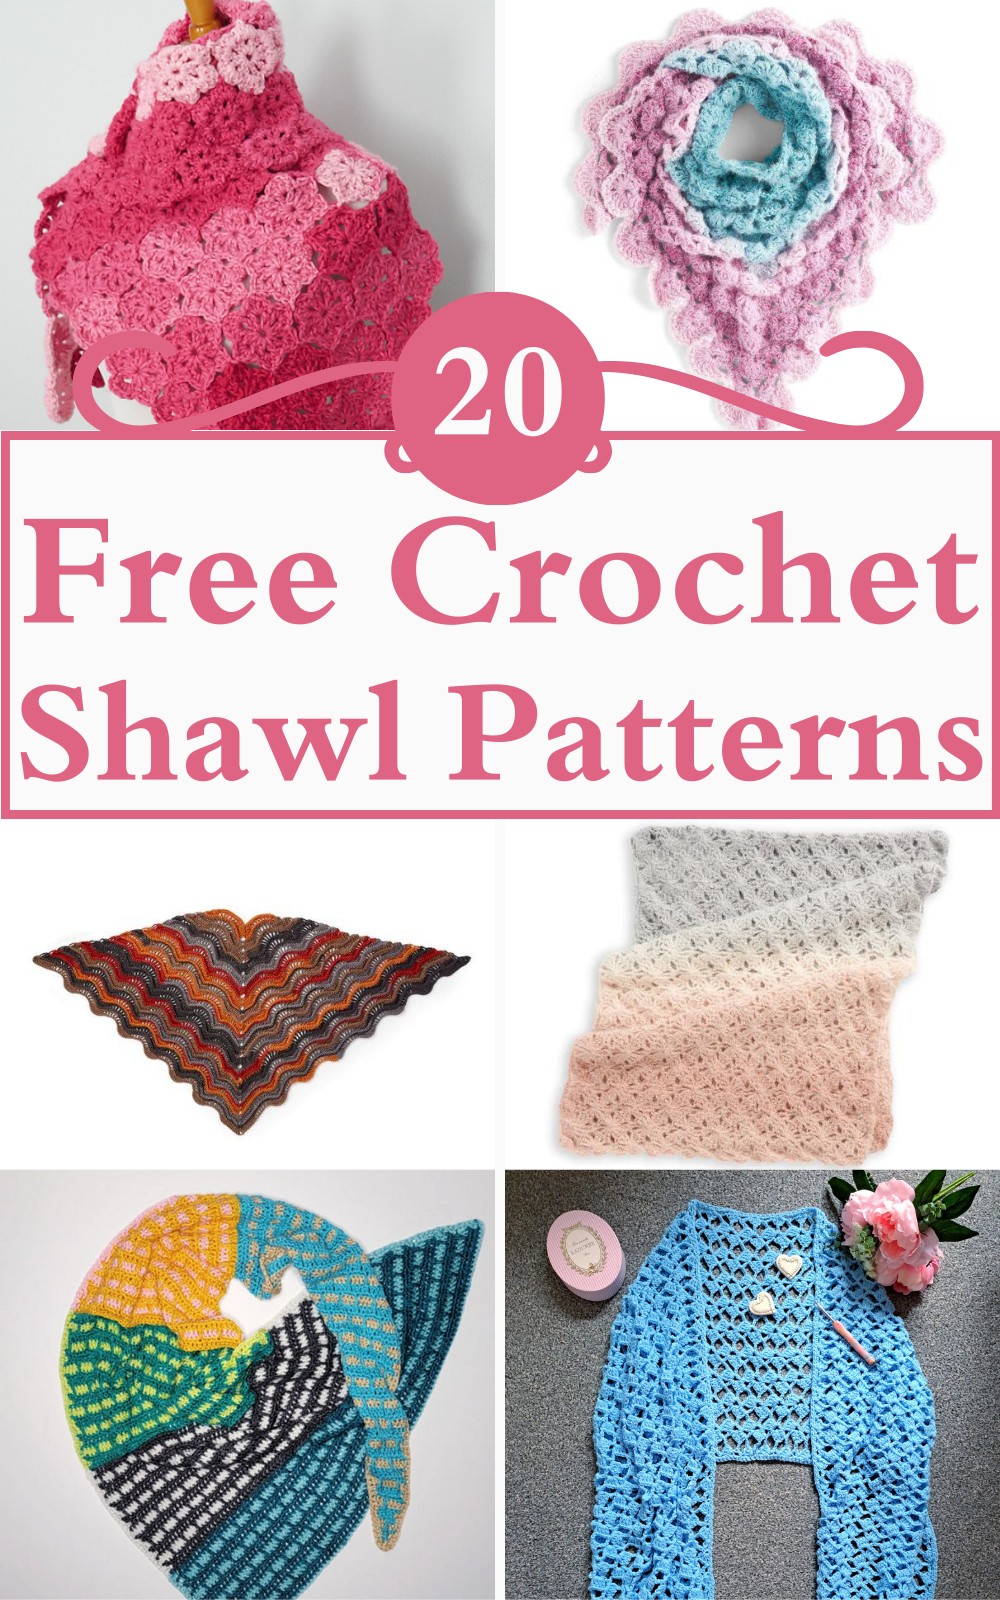 5 Free Crochet Shawl Patterns 